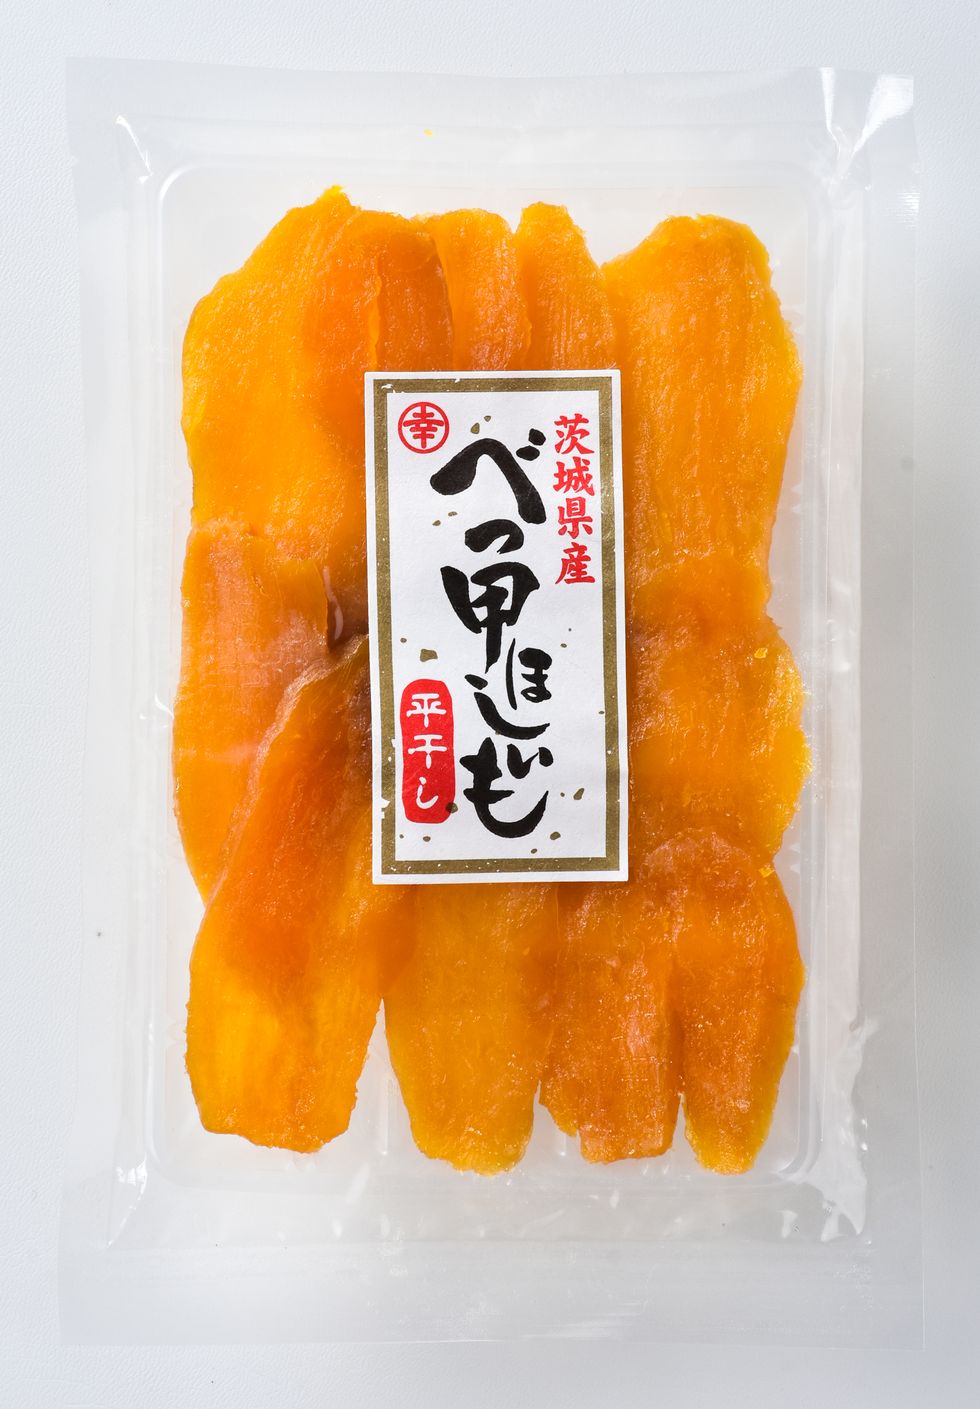 a package of orange food